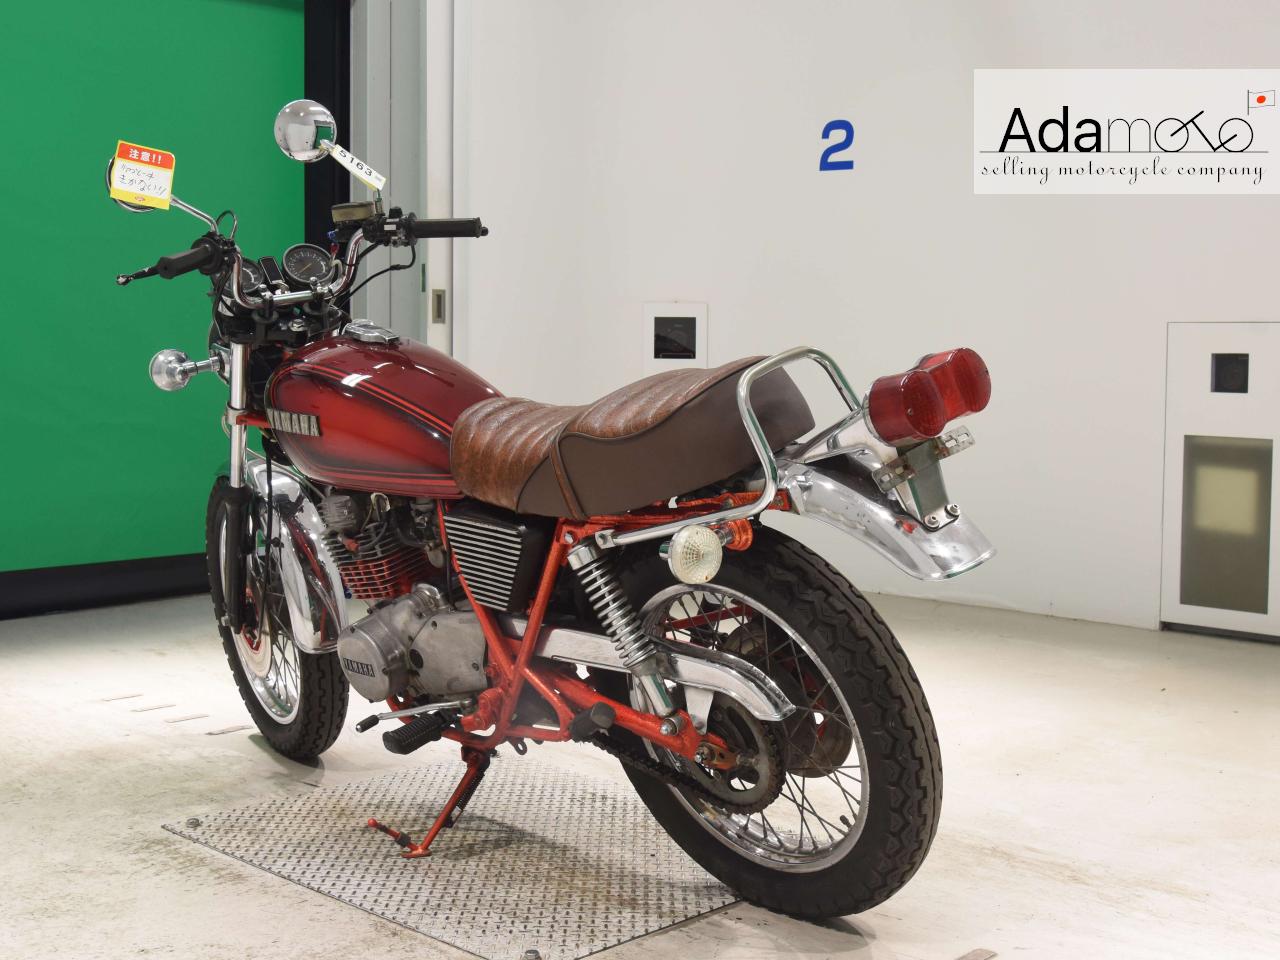 Yamaha GX250 - Adamoto - Motorcycles from Japan